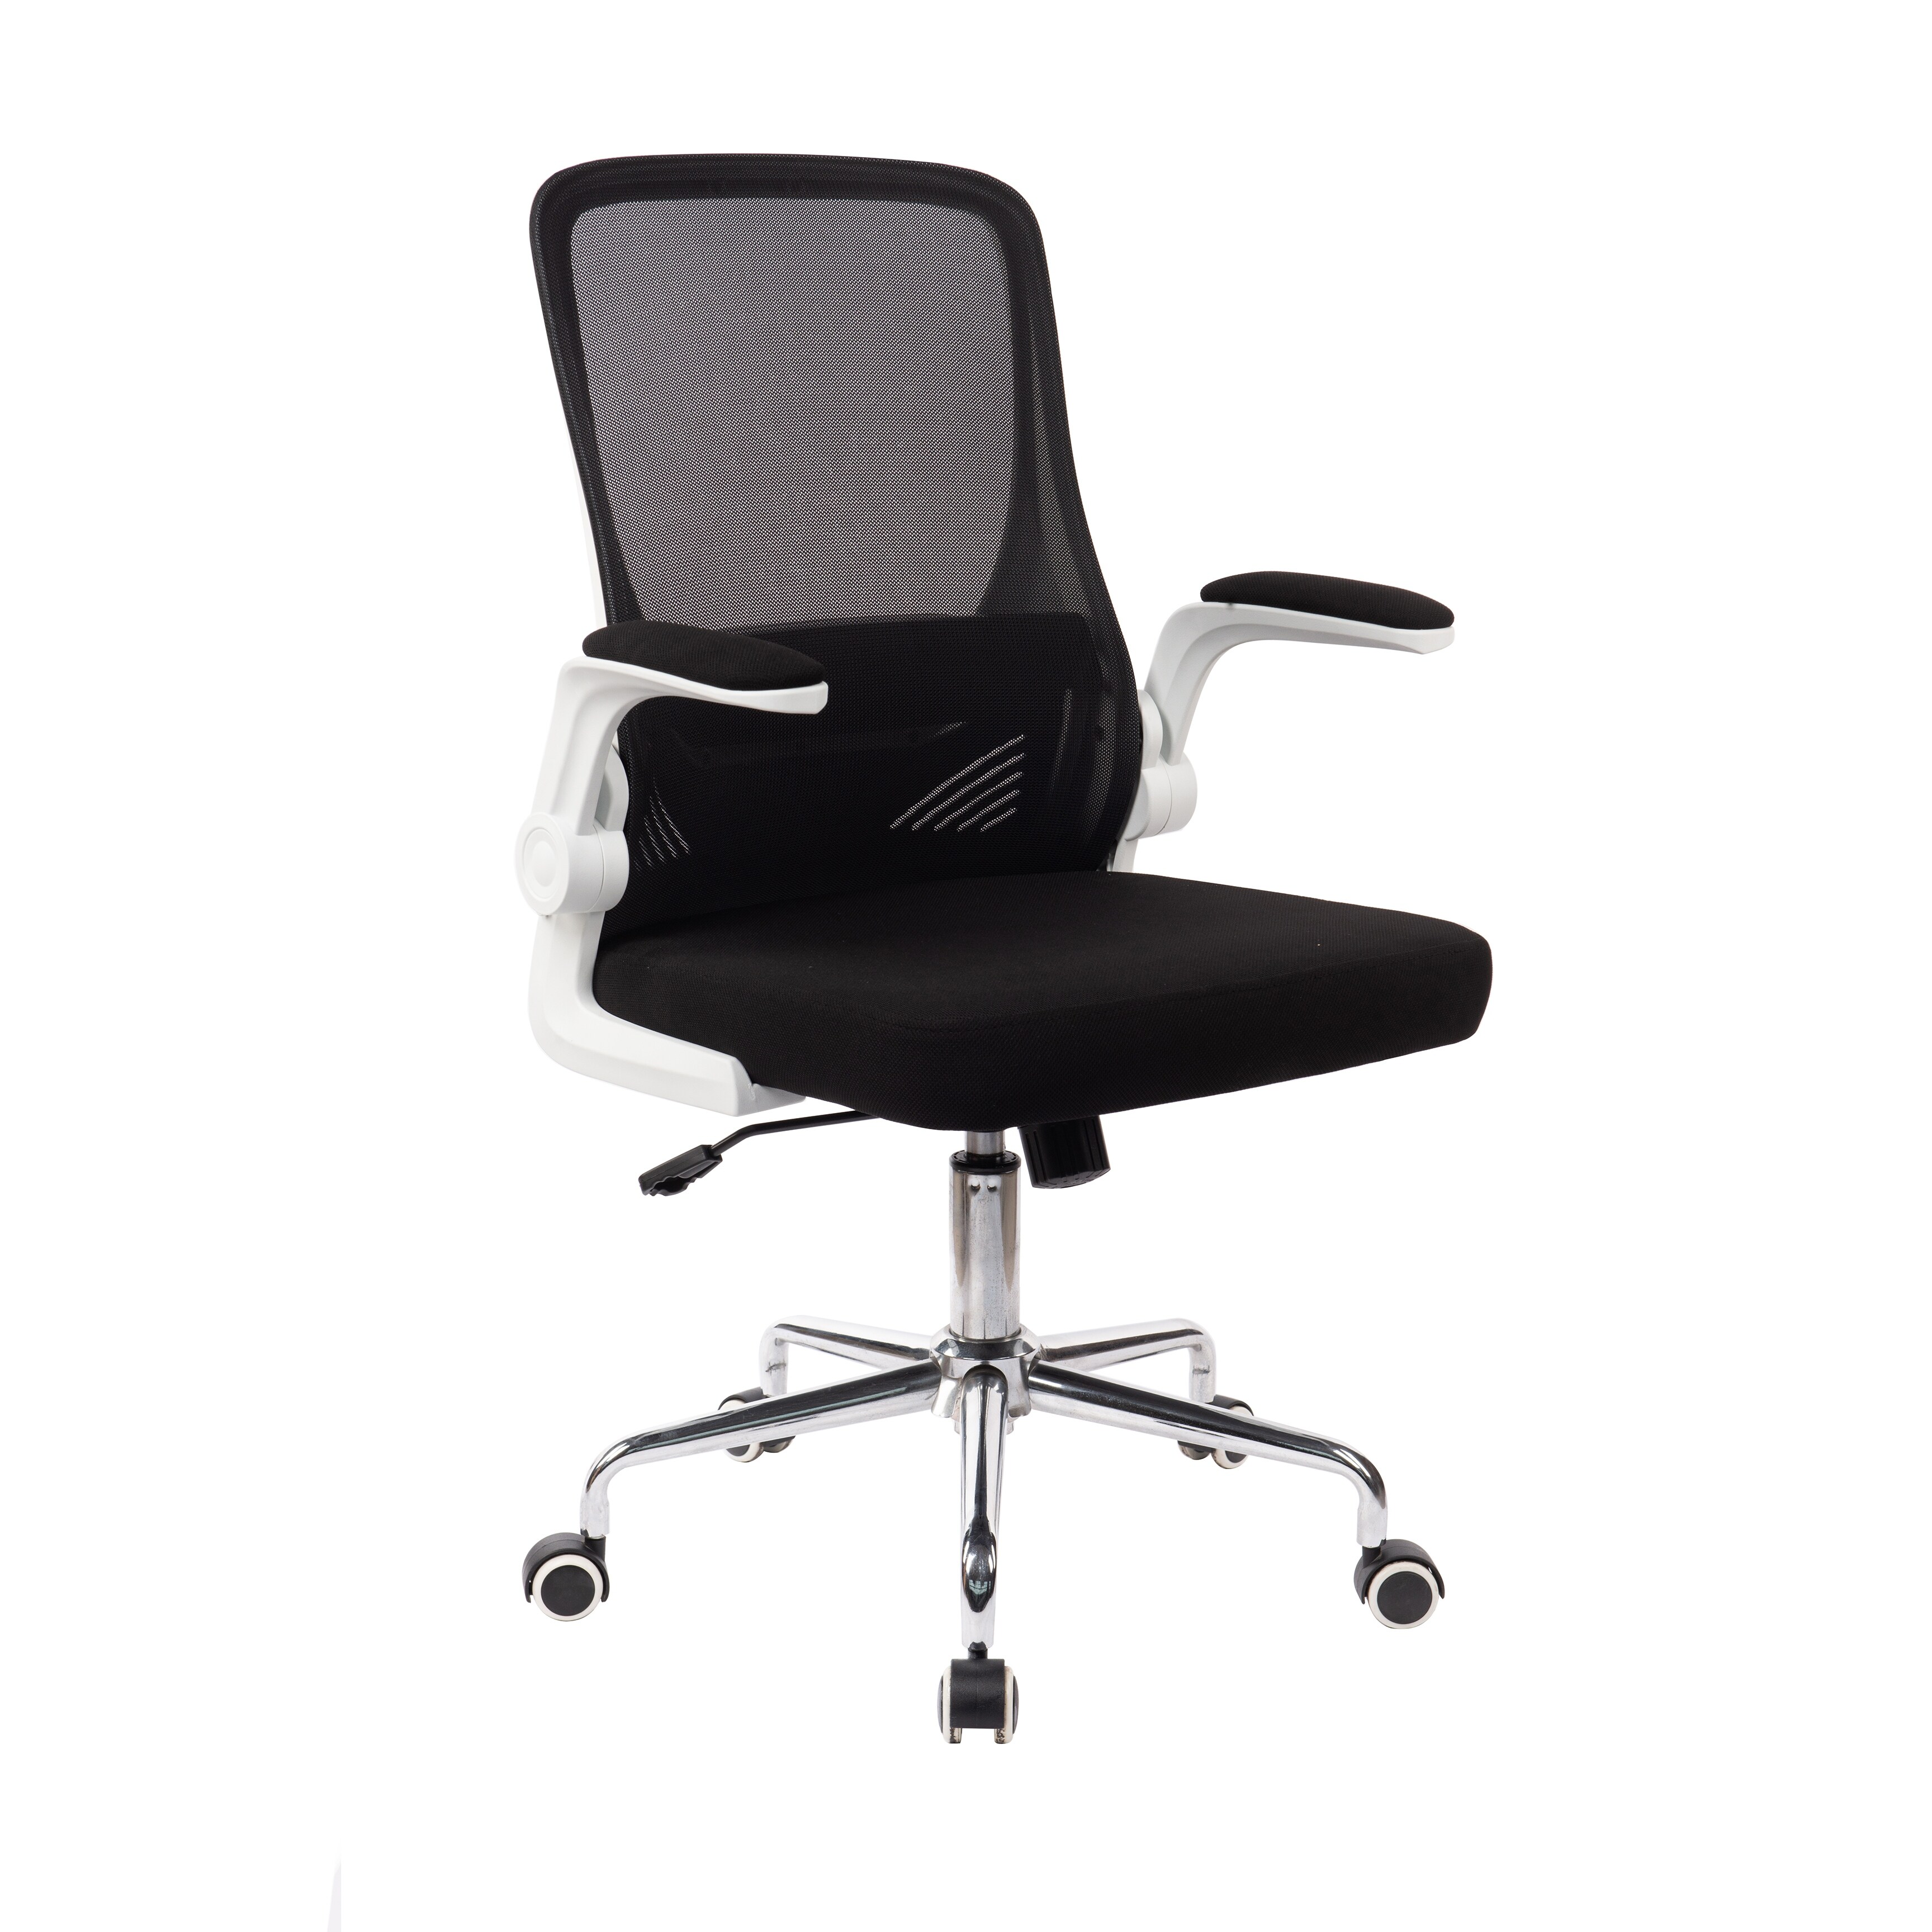 Porthos Home Nova Swivel Office Chair, Mesh Back, Flip-up Armrests